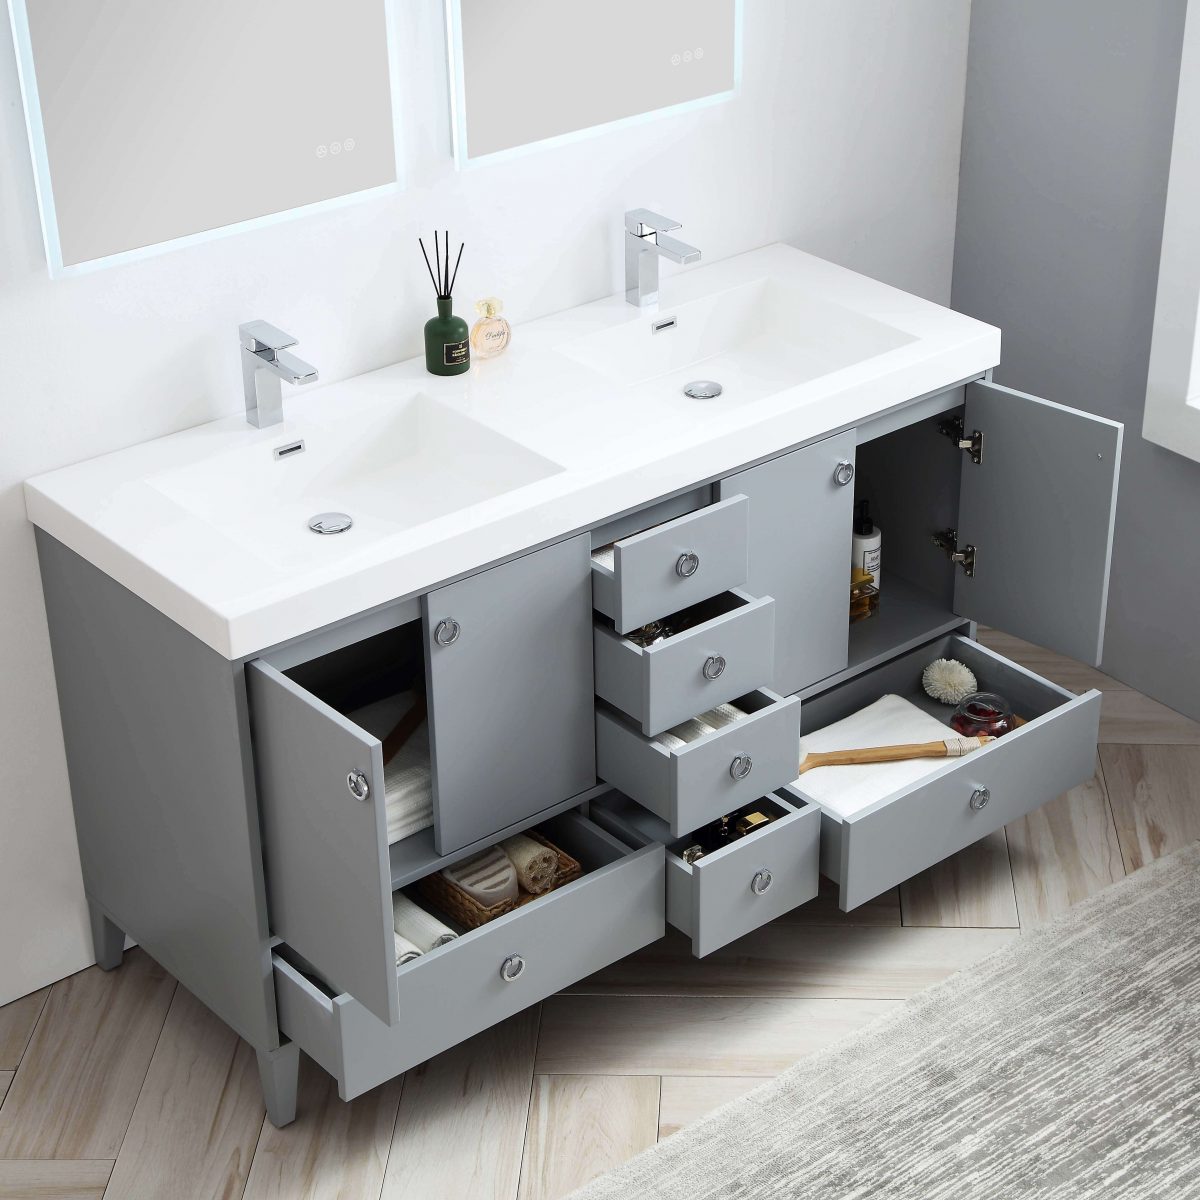 Lyon 60" Bathroom Vanity  #size_60"  #color_metal grey 